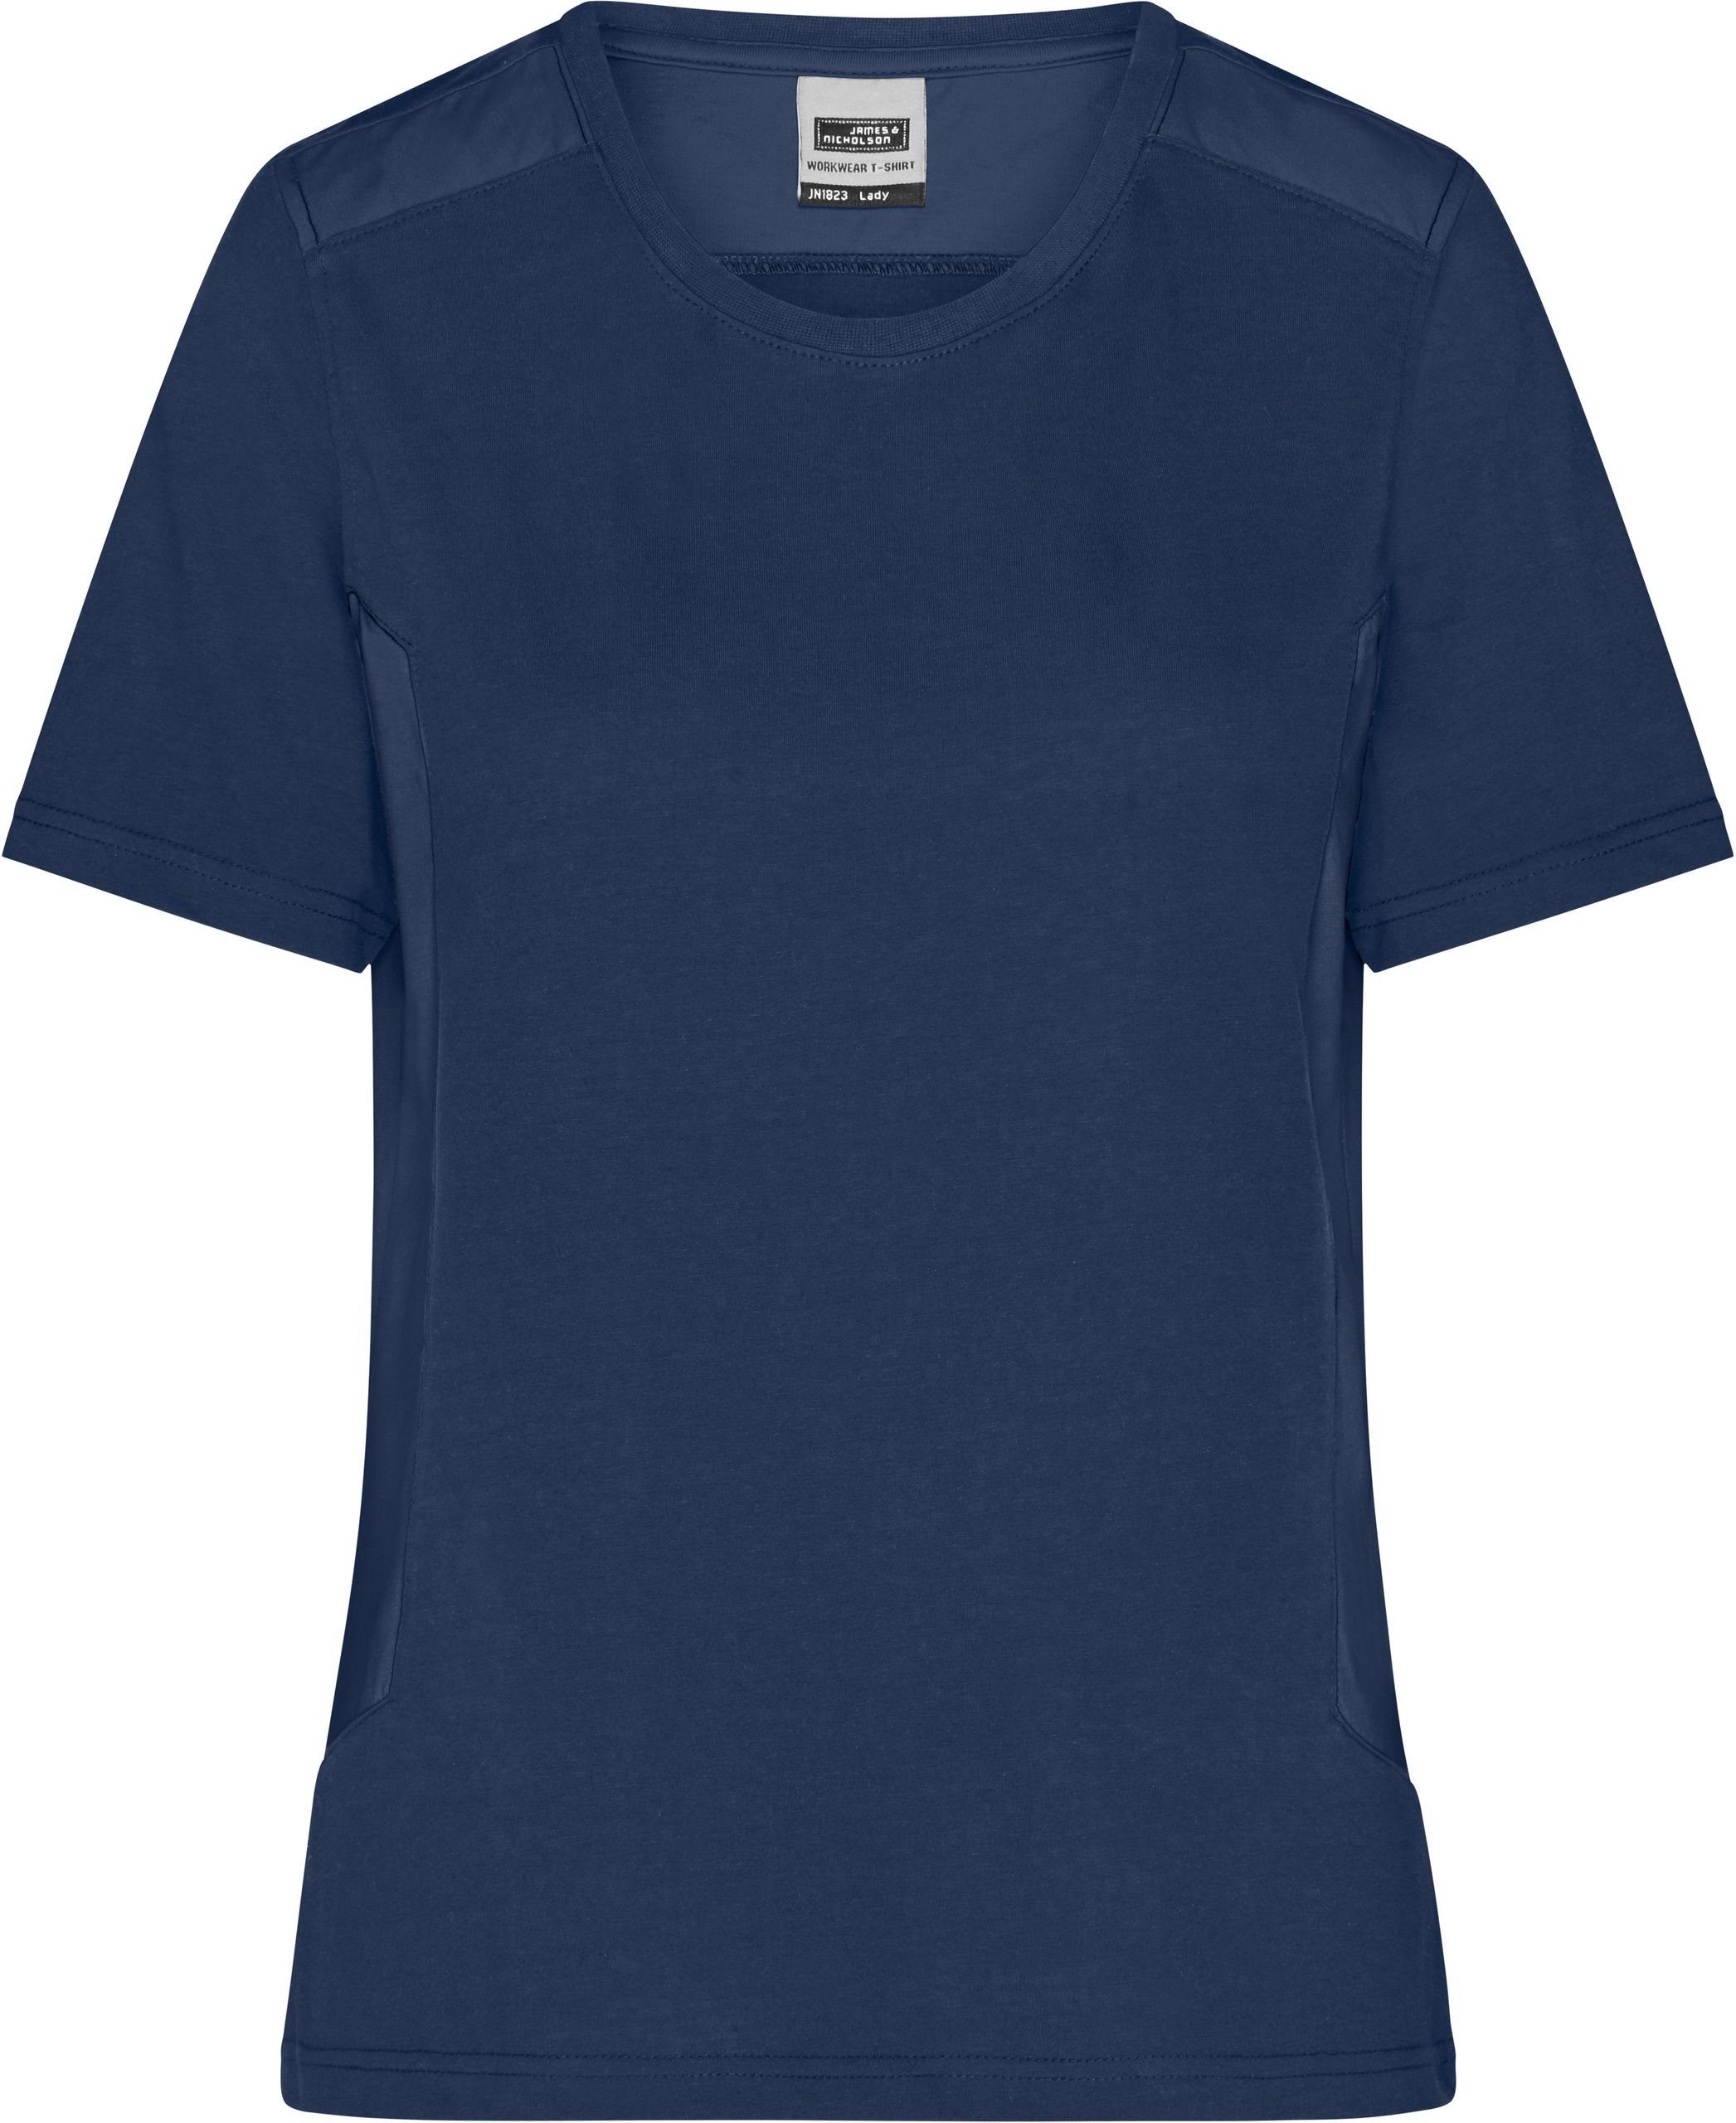 James & Nicholson T-Shirt Workwear T-Shirt navy/navy Damen Strong 